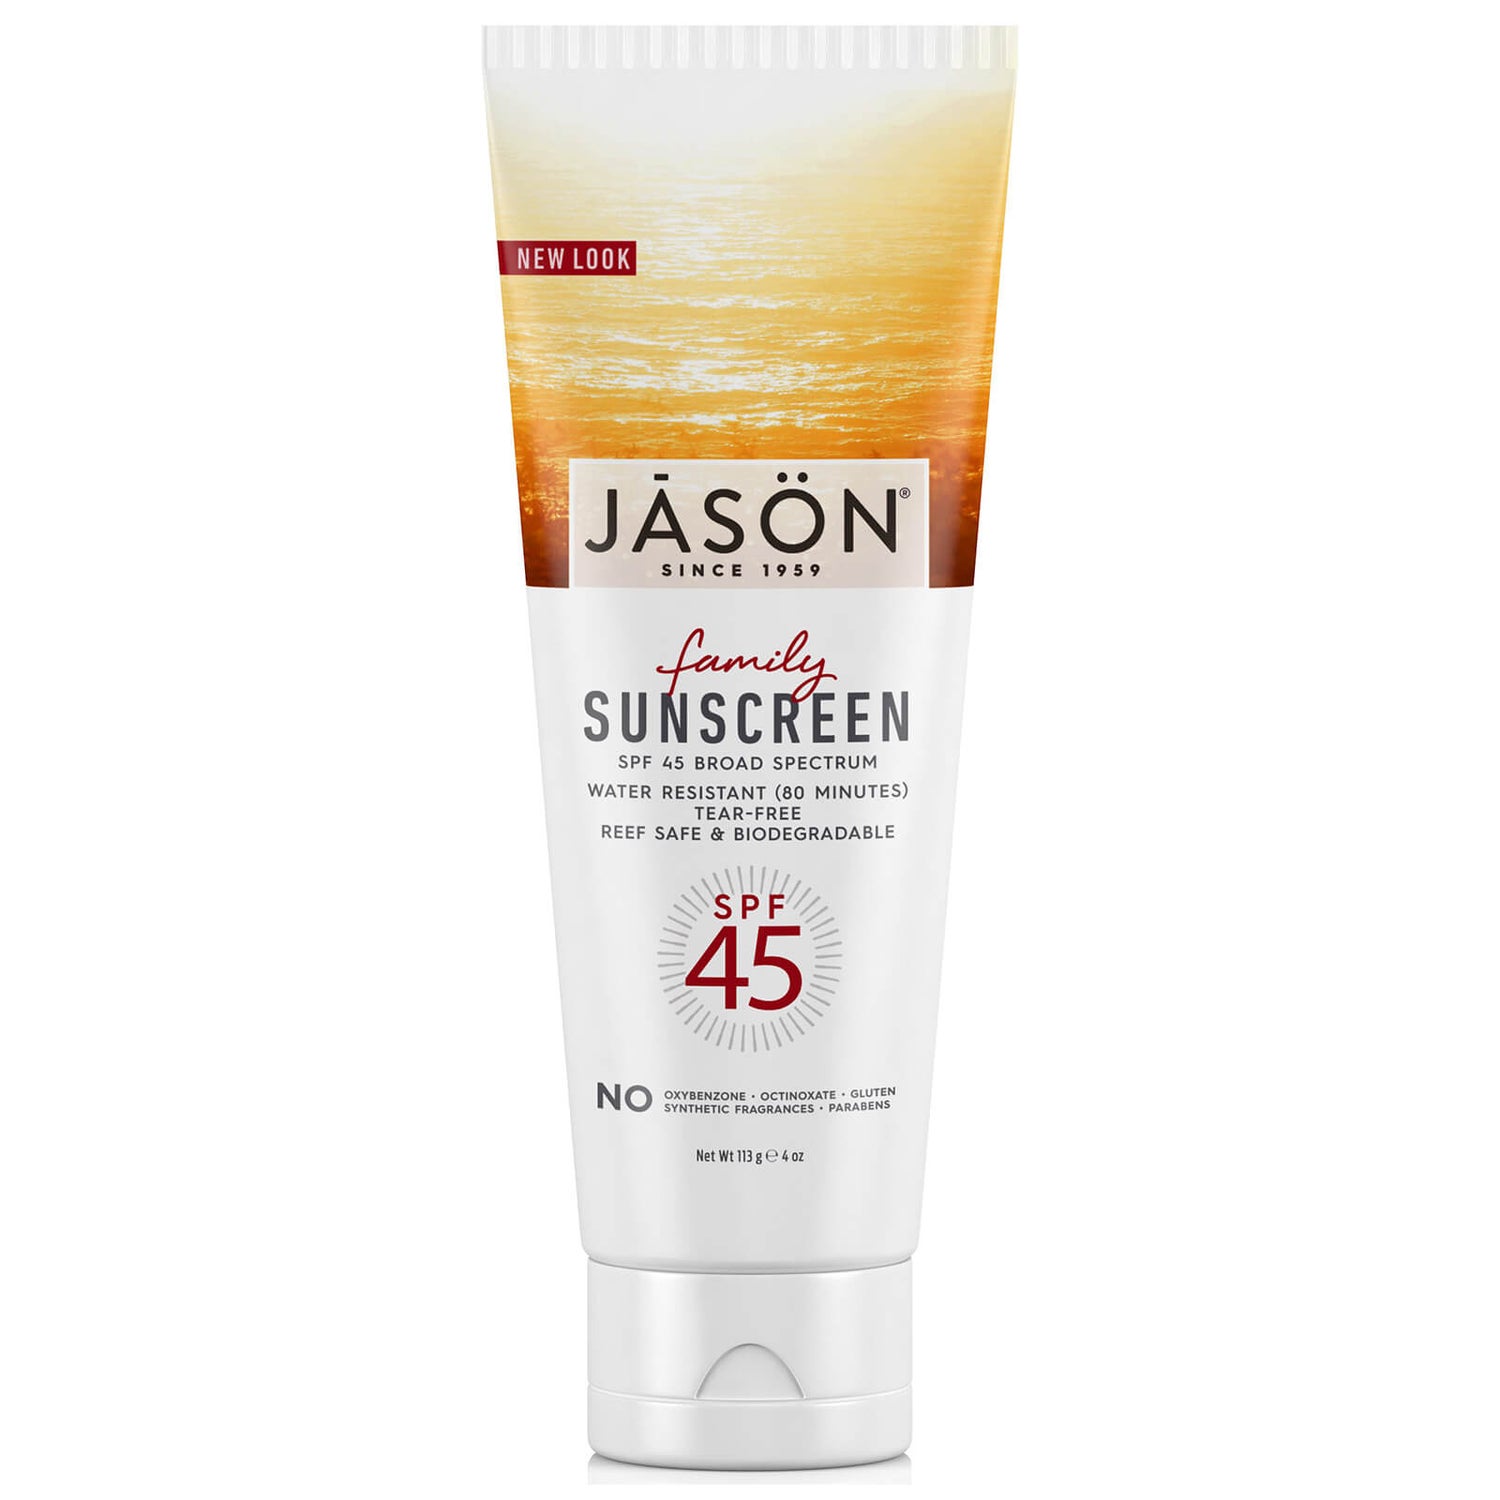 JASON 杰森家庭防晒用品 SPF45 (113G)